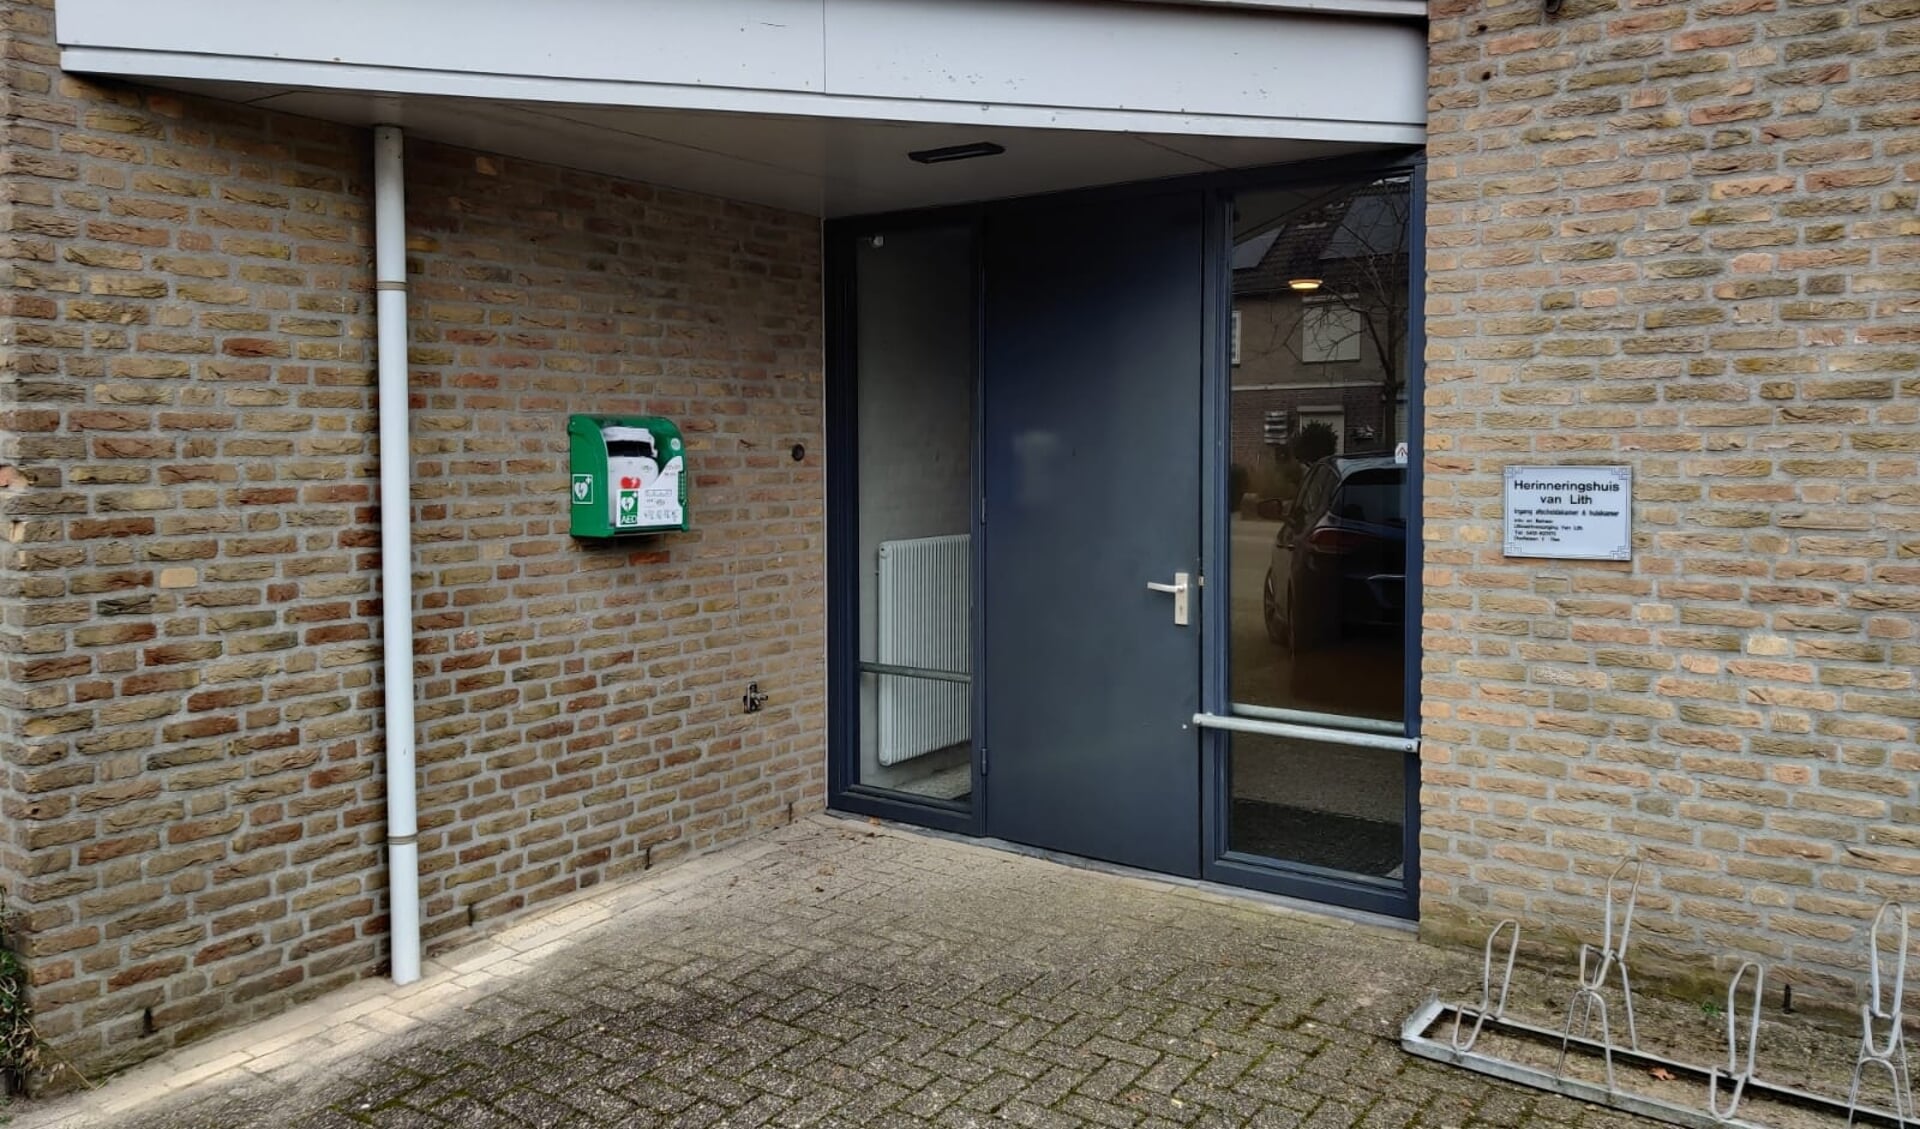 De AED bij Herinneringshuis Van Lith aan de Constantijn Huygensstraat 38.